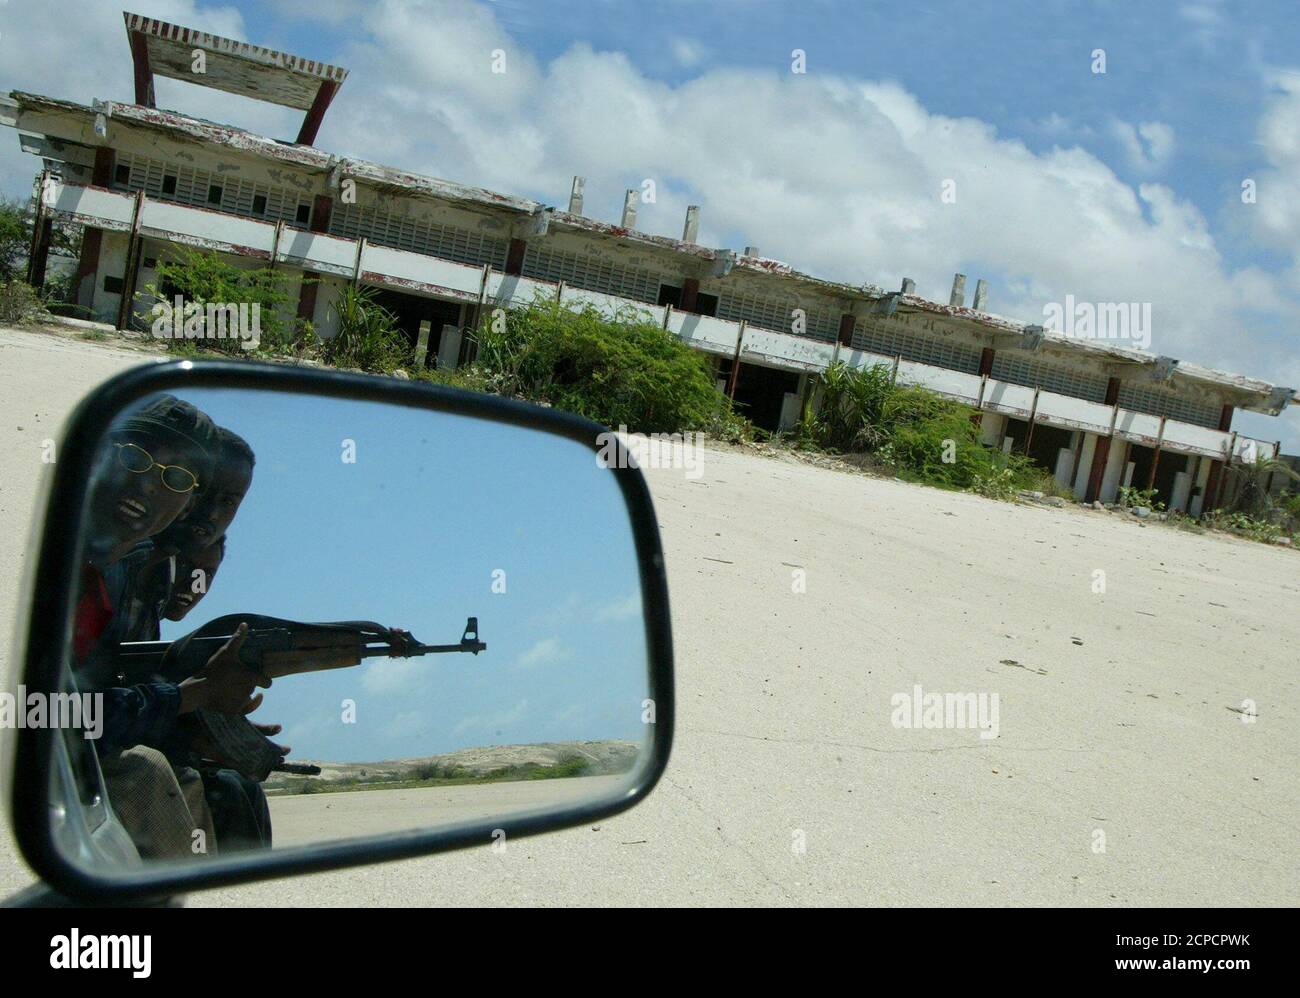 I gunmen somali guidano sulla pista dell'aeroporto internazionale di Mogadiscio che è stato distrutto durante i combattimenti tra le fazioni somale rivali dopo il rovesciamento del dittatore Mohammed Siad barre nel 1991. Le parti di motore carred surcresciute dai cactus sono tutte che rimangono oggi di due elicotteri neri del Hawk degli Stati Uniti abbattuti dai gunmen somali un decennio fa. Le looter sono state rapide per trasformare il telaio in alluminio in utensili domestici. Foto scattata il 24 settembre 2003. PER ANDARE CON SOMALIA BLACKHAWKDOWN REUTERS/ANTONY NJUGUNA Foto Stock